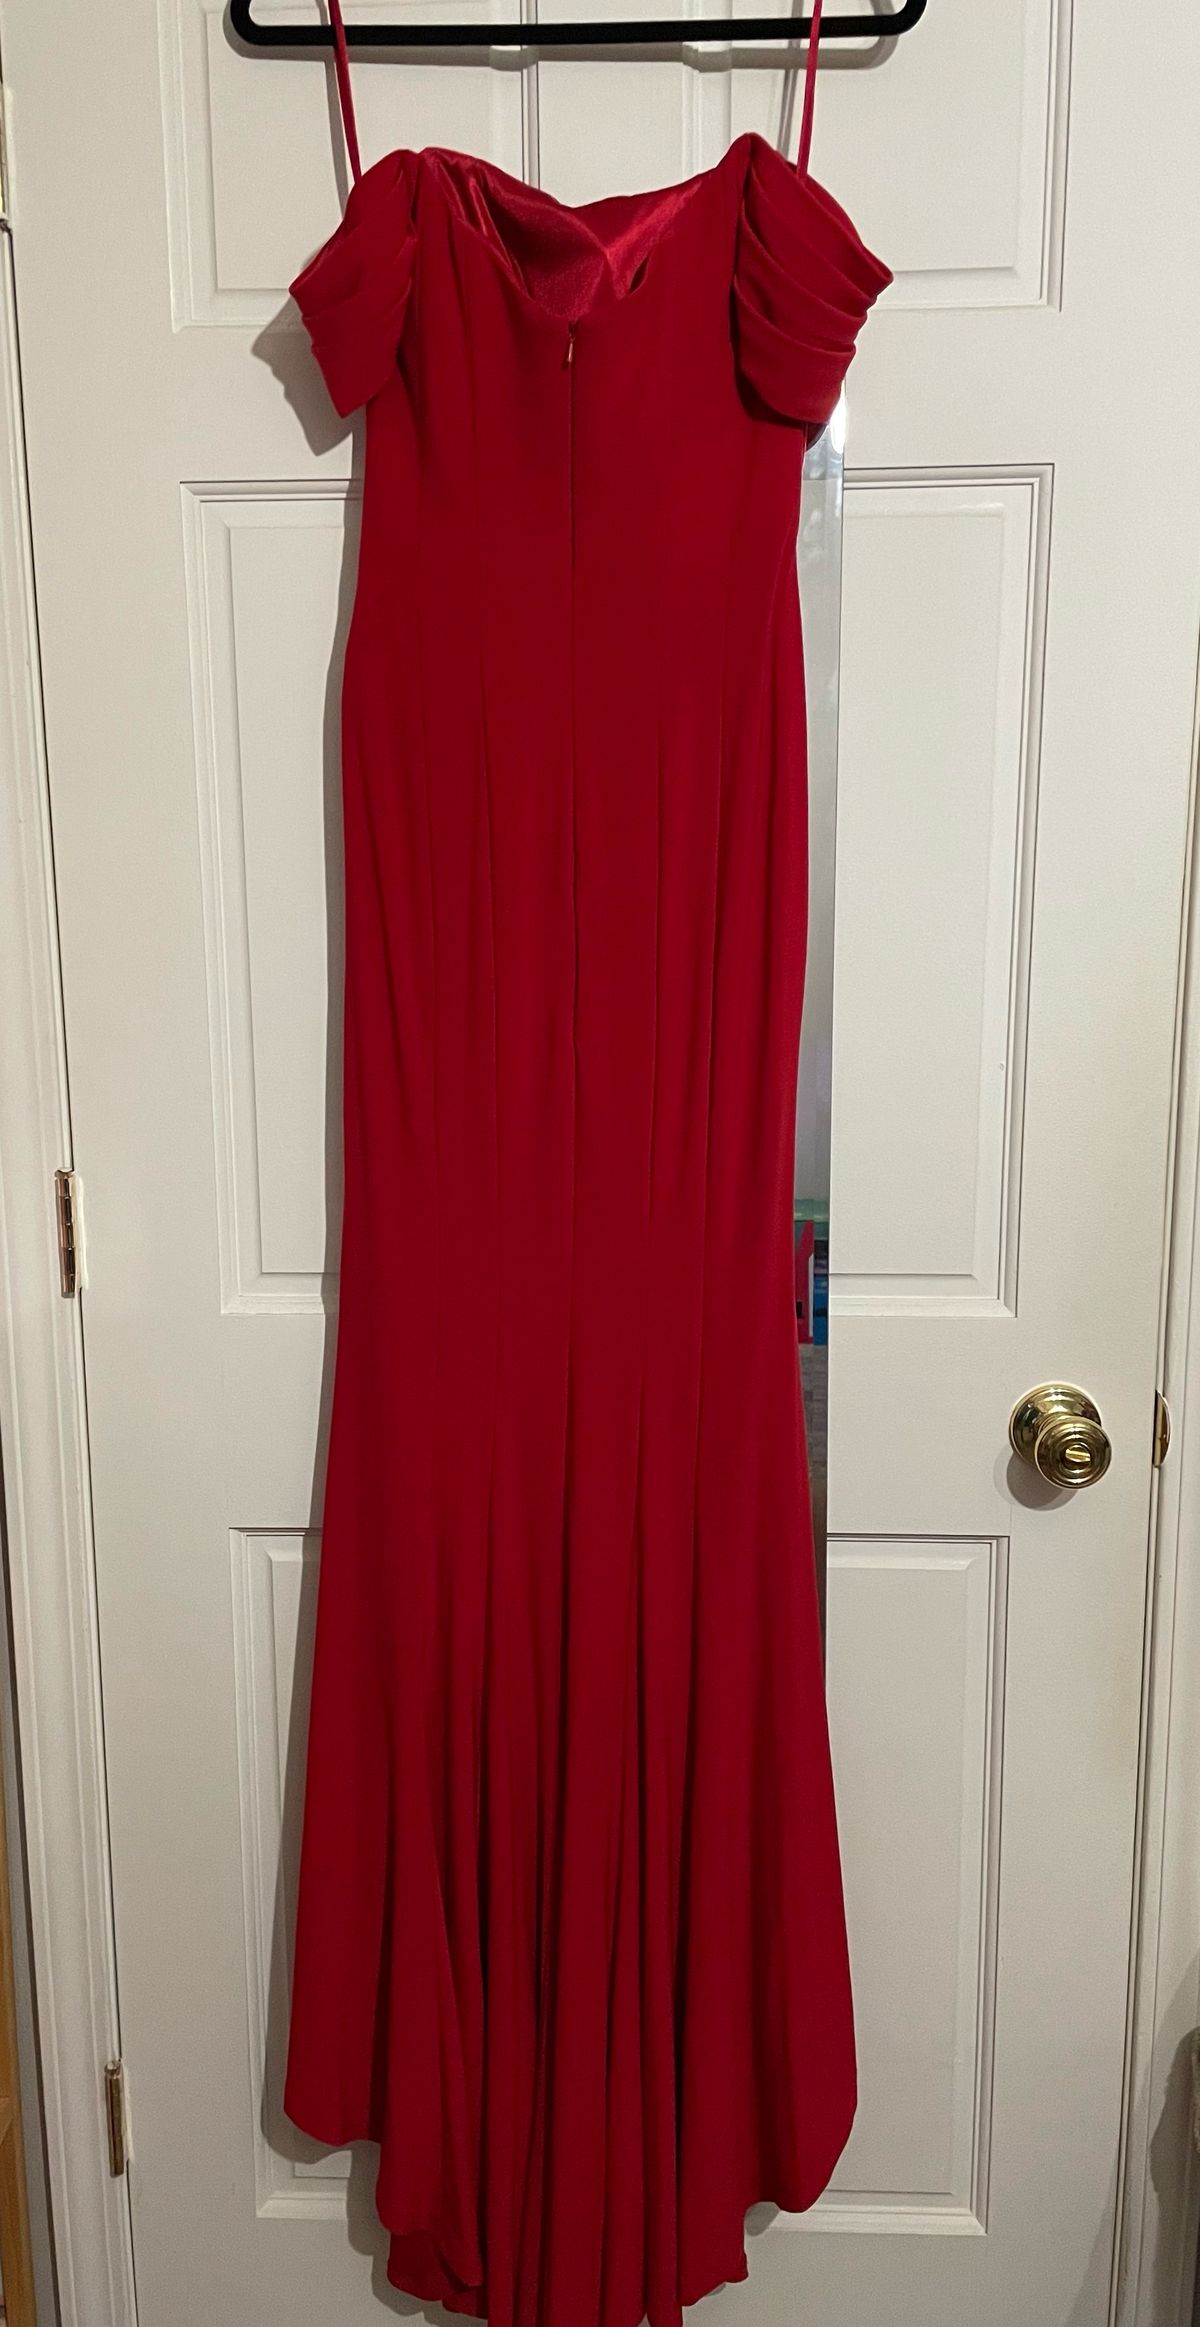 Size 2 Off The Shoulder Red Side Slit Dress on Queenly